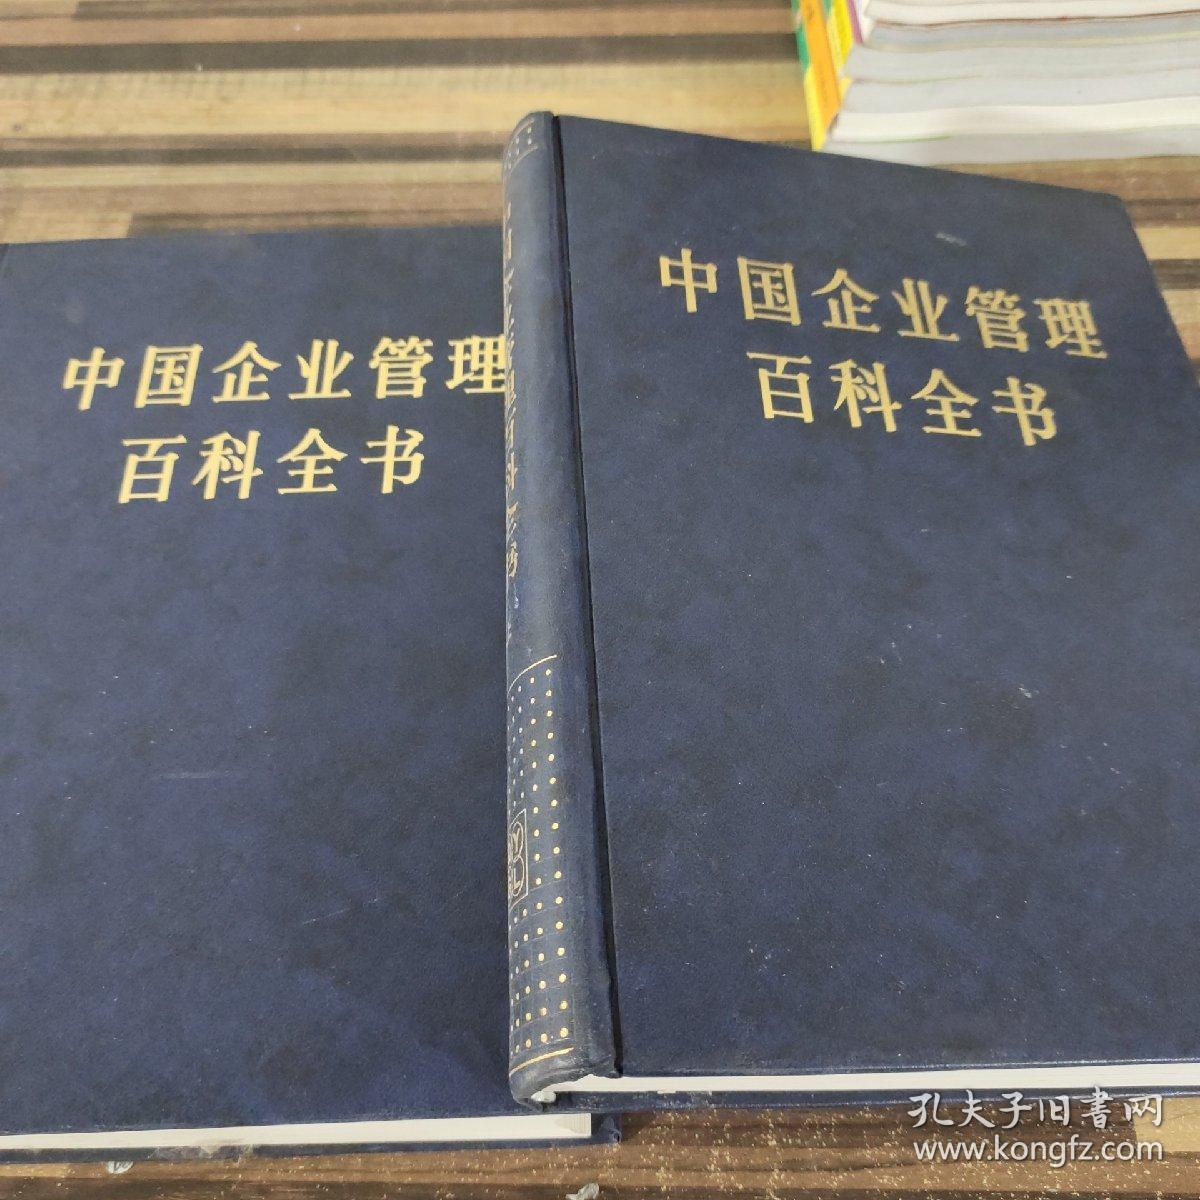 中国企业管理百科全书上下合售